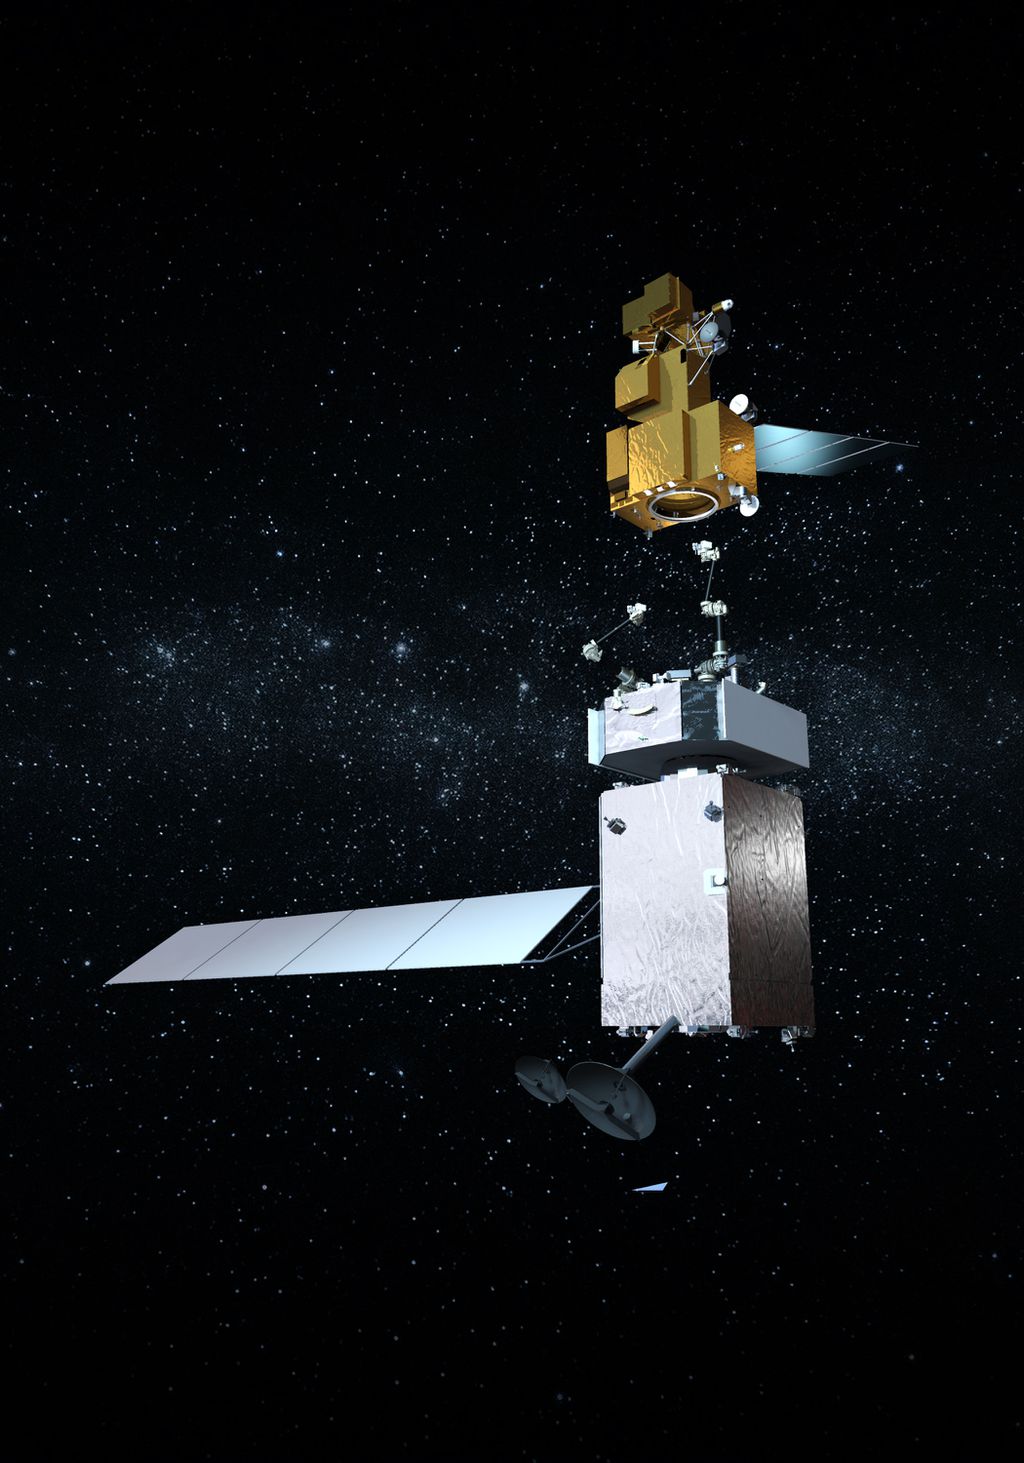 Concepção artística do OSAM-1 abordando seu satélite alvo (Imagem: Reprodução/NASA)